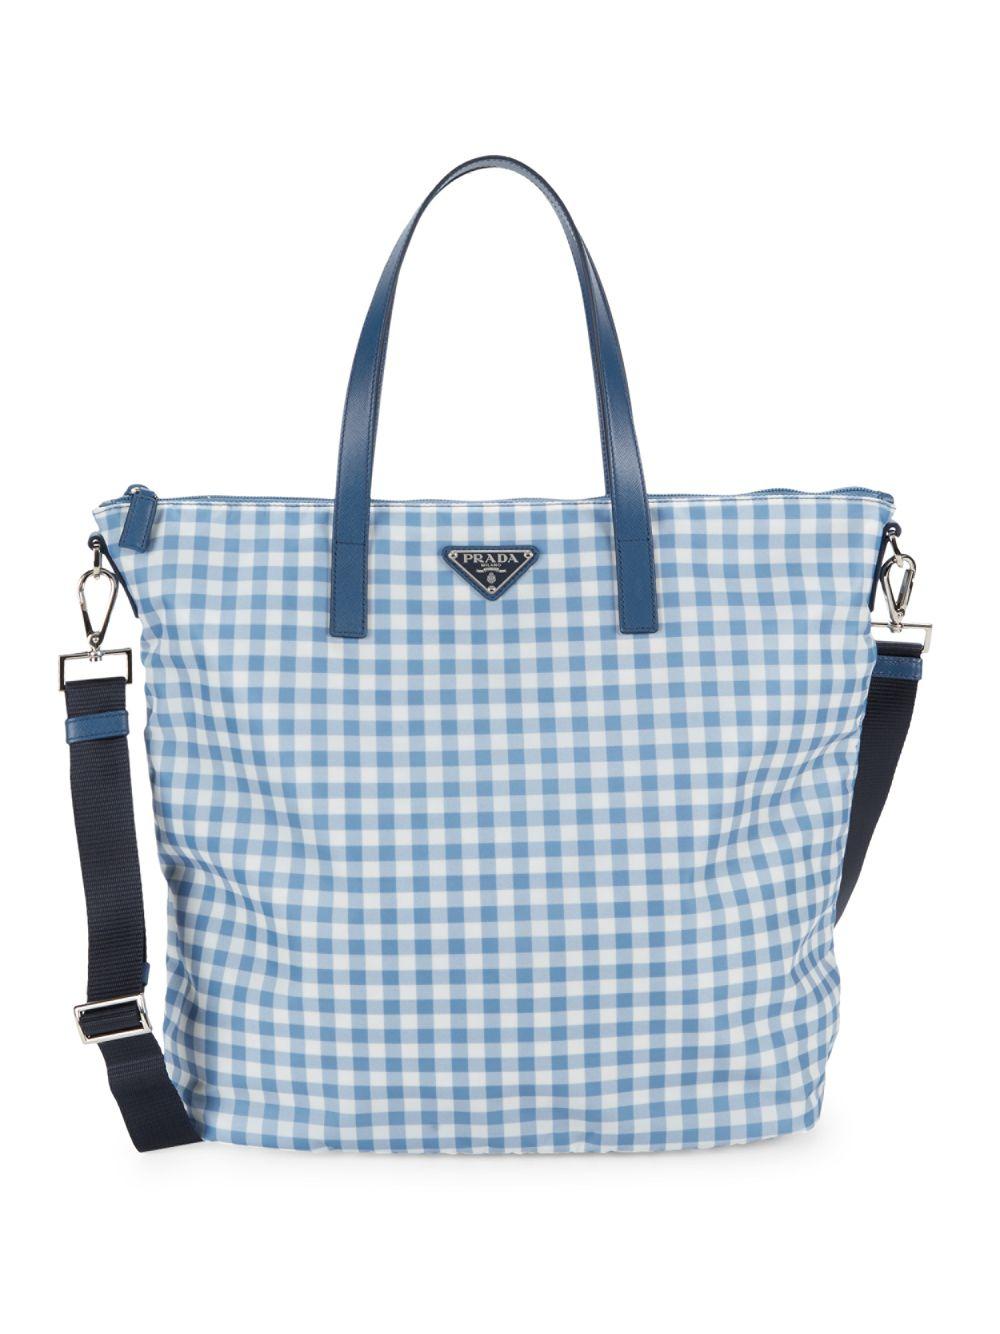 prada blue and white bag